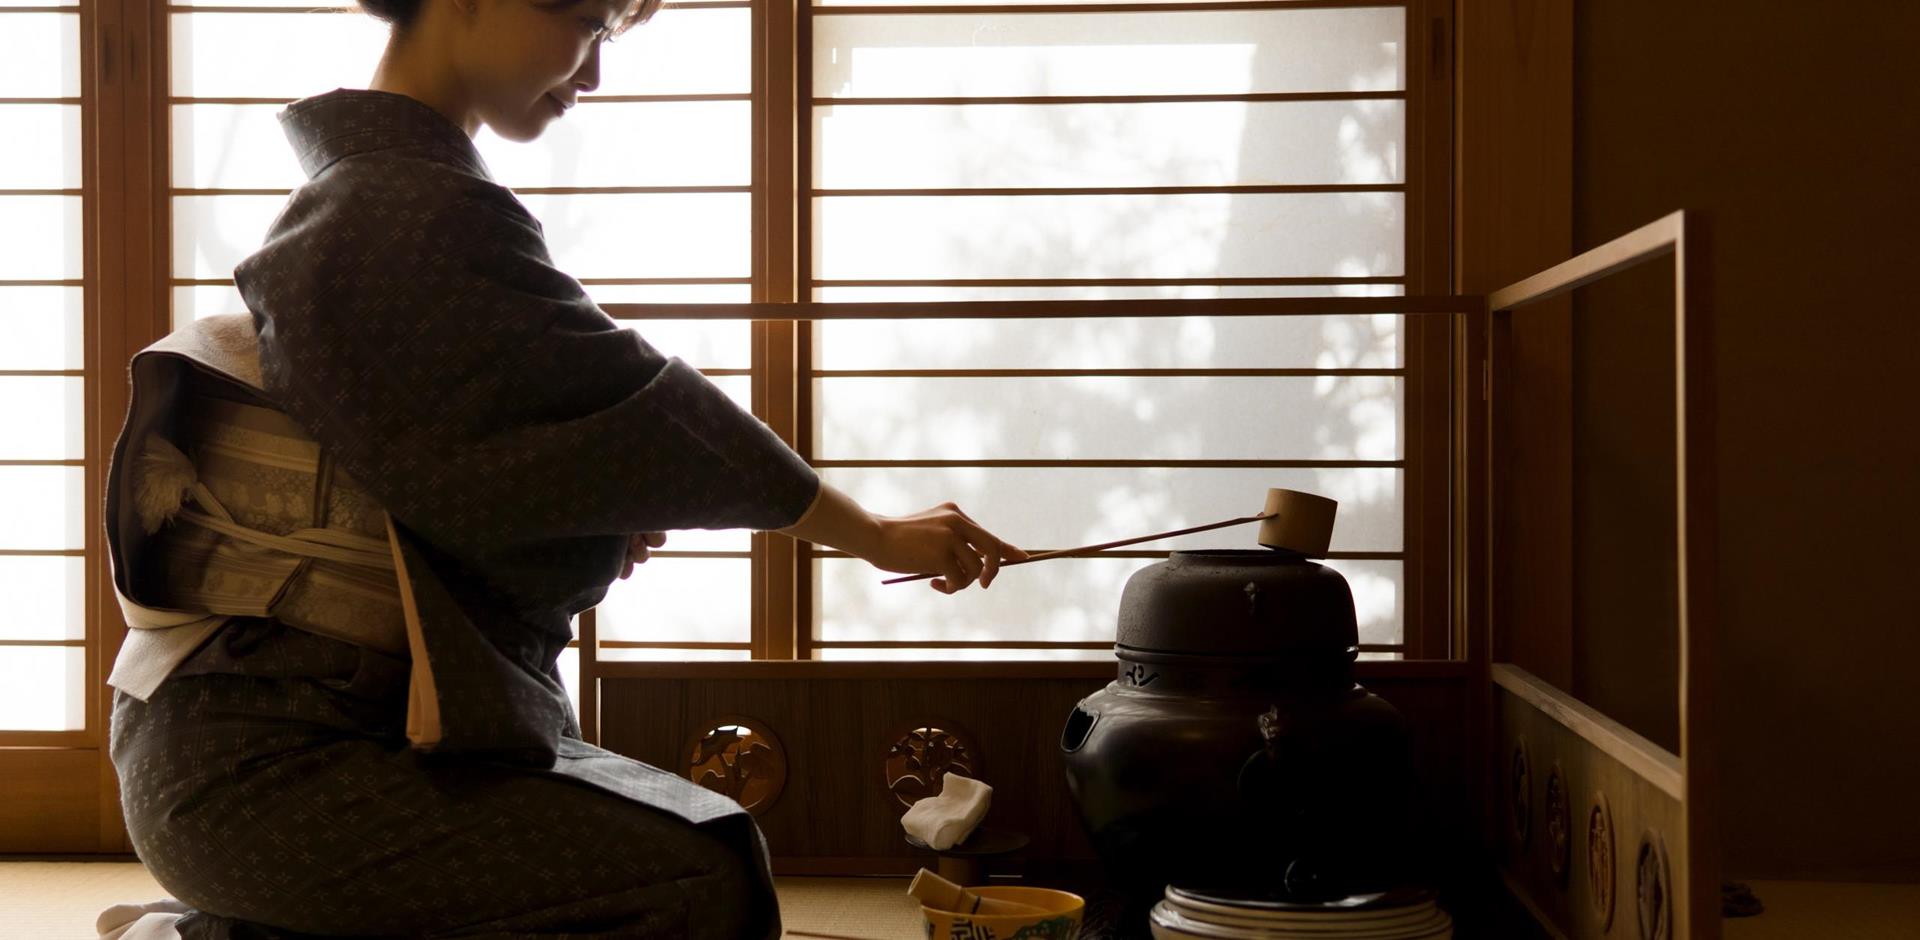 Enjoy a private tea ceremony